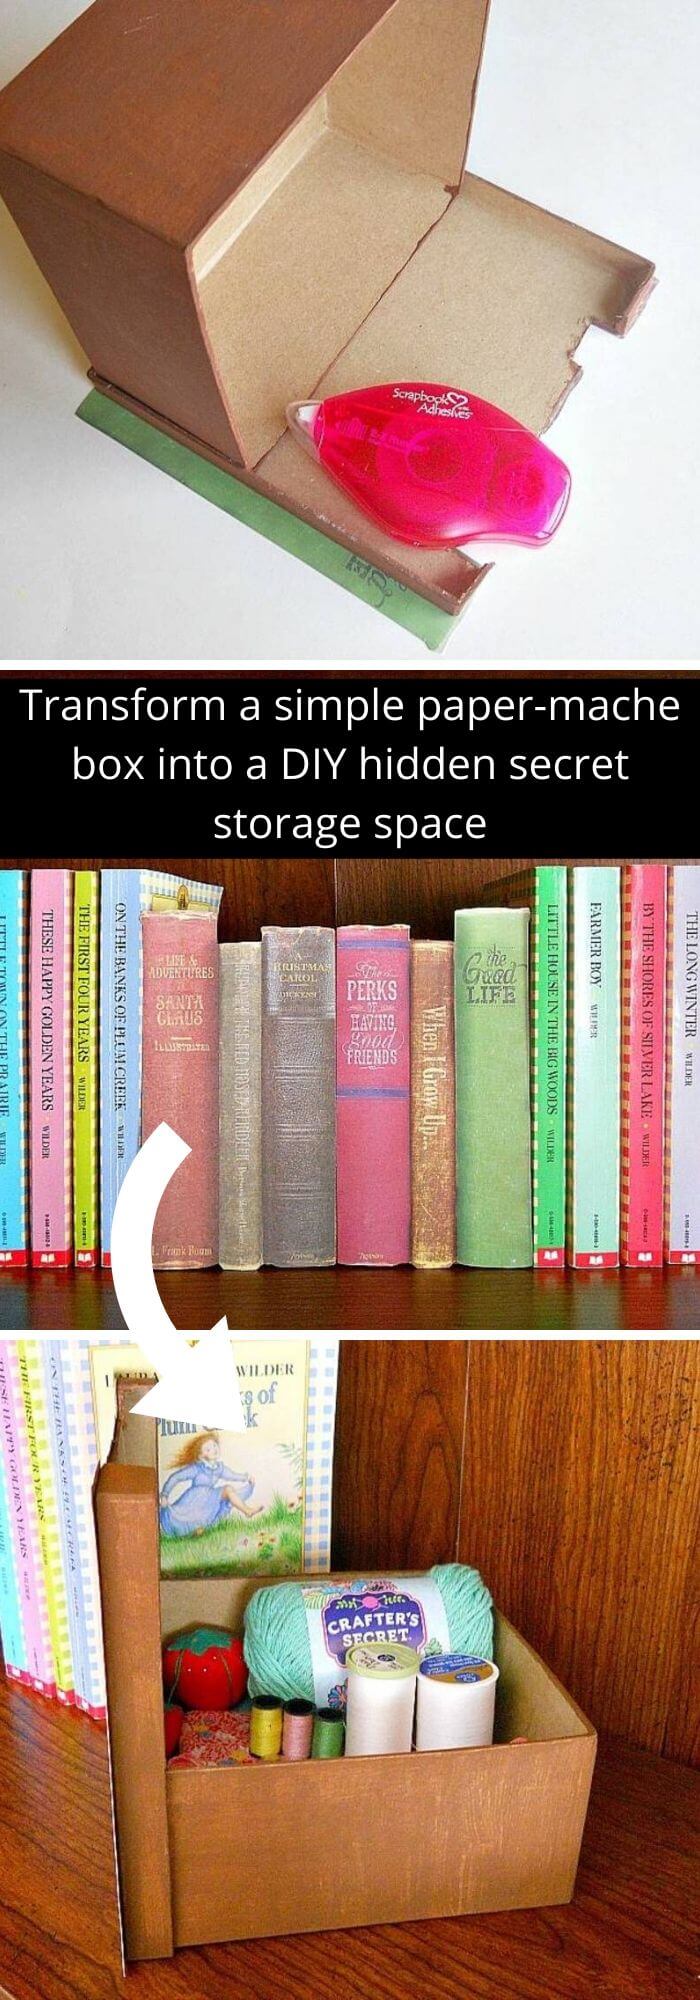 5 hidden storage ideas